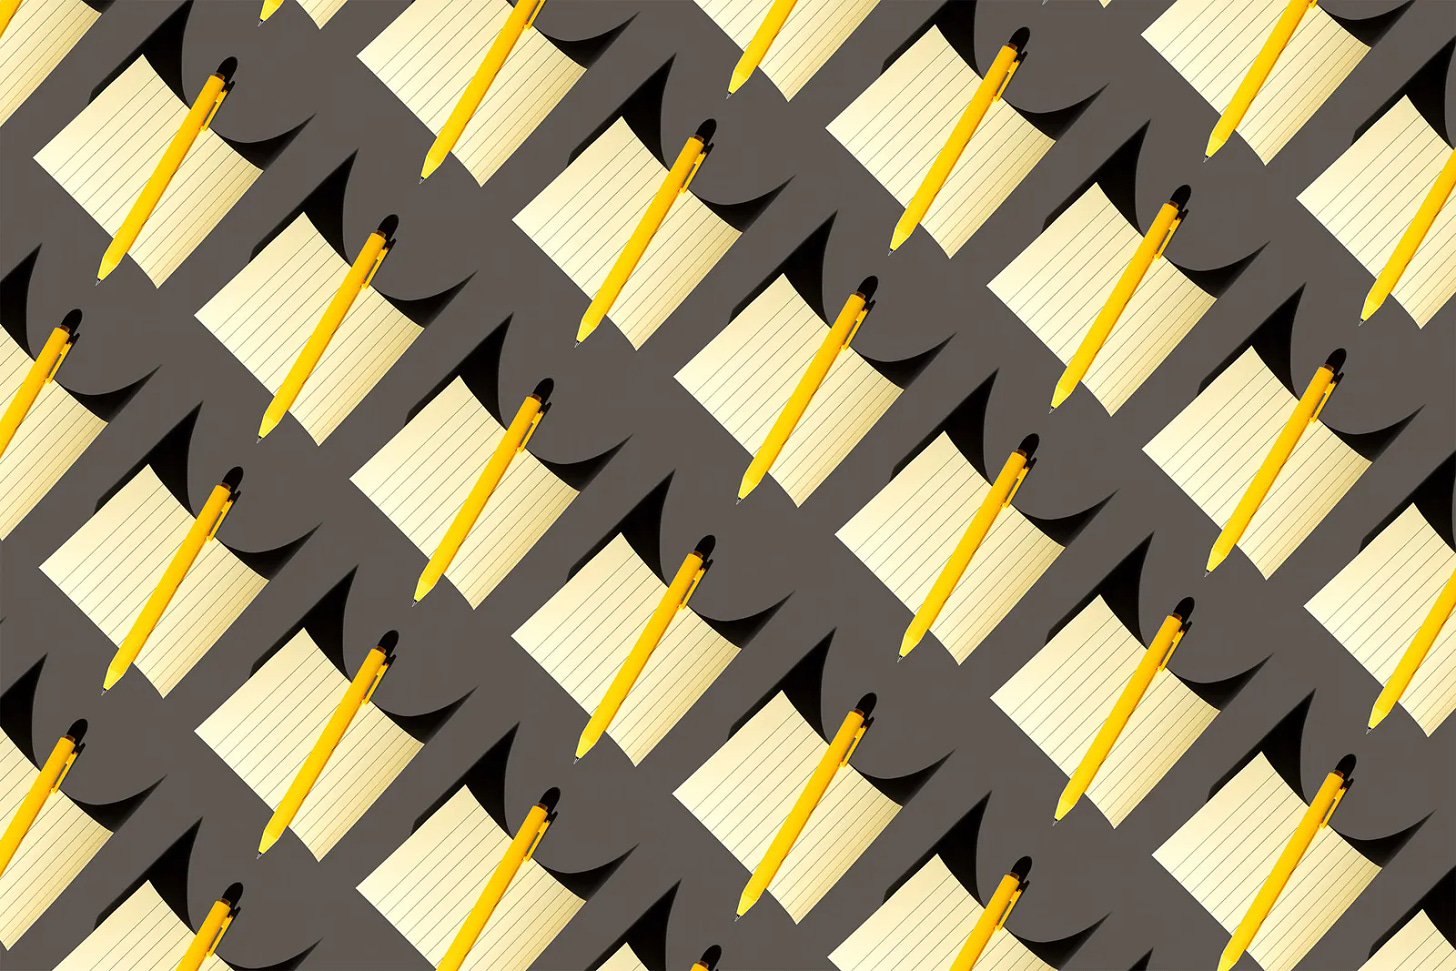 Um pattern de blocos de notas amarelos com canetas amarelas em cima deles em um fundo cinza